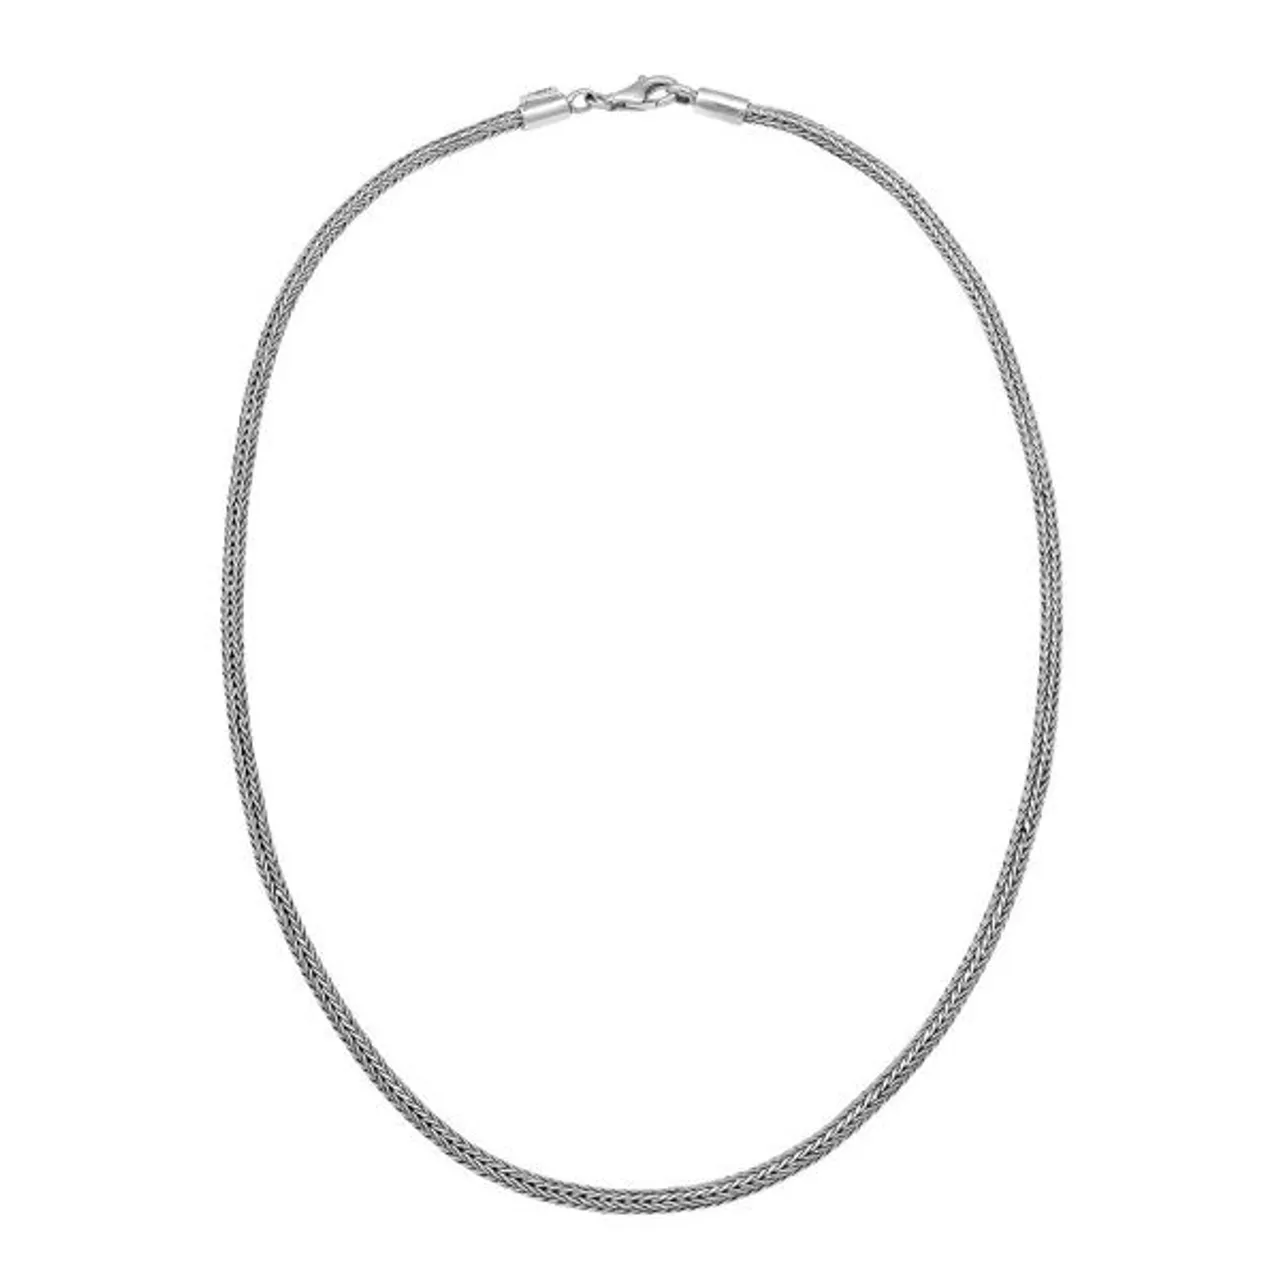 Silberkette KUZZOI "Männer Zopf Schlangenkette 4mm Oxidiert 925 Silber" Halsketten Gr. 60, ohne Stein, Silber 925 (Sterlingsilber), Länge: 50 cm, silb...